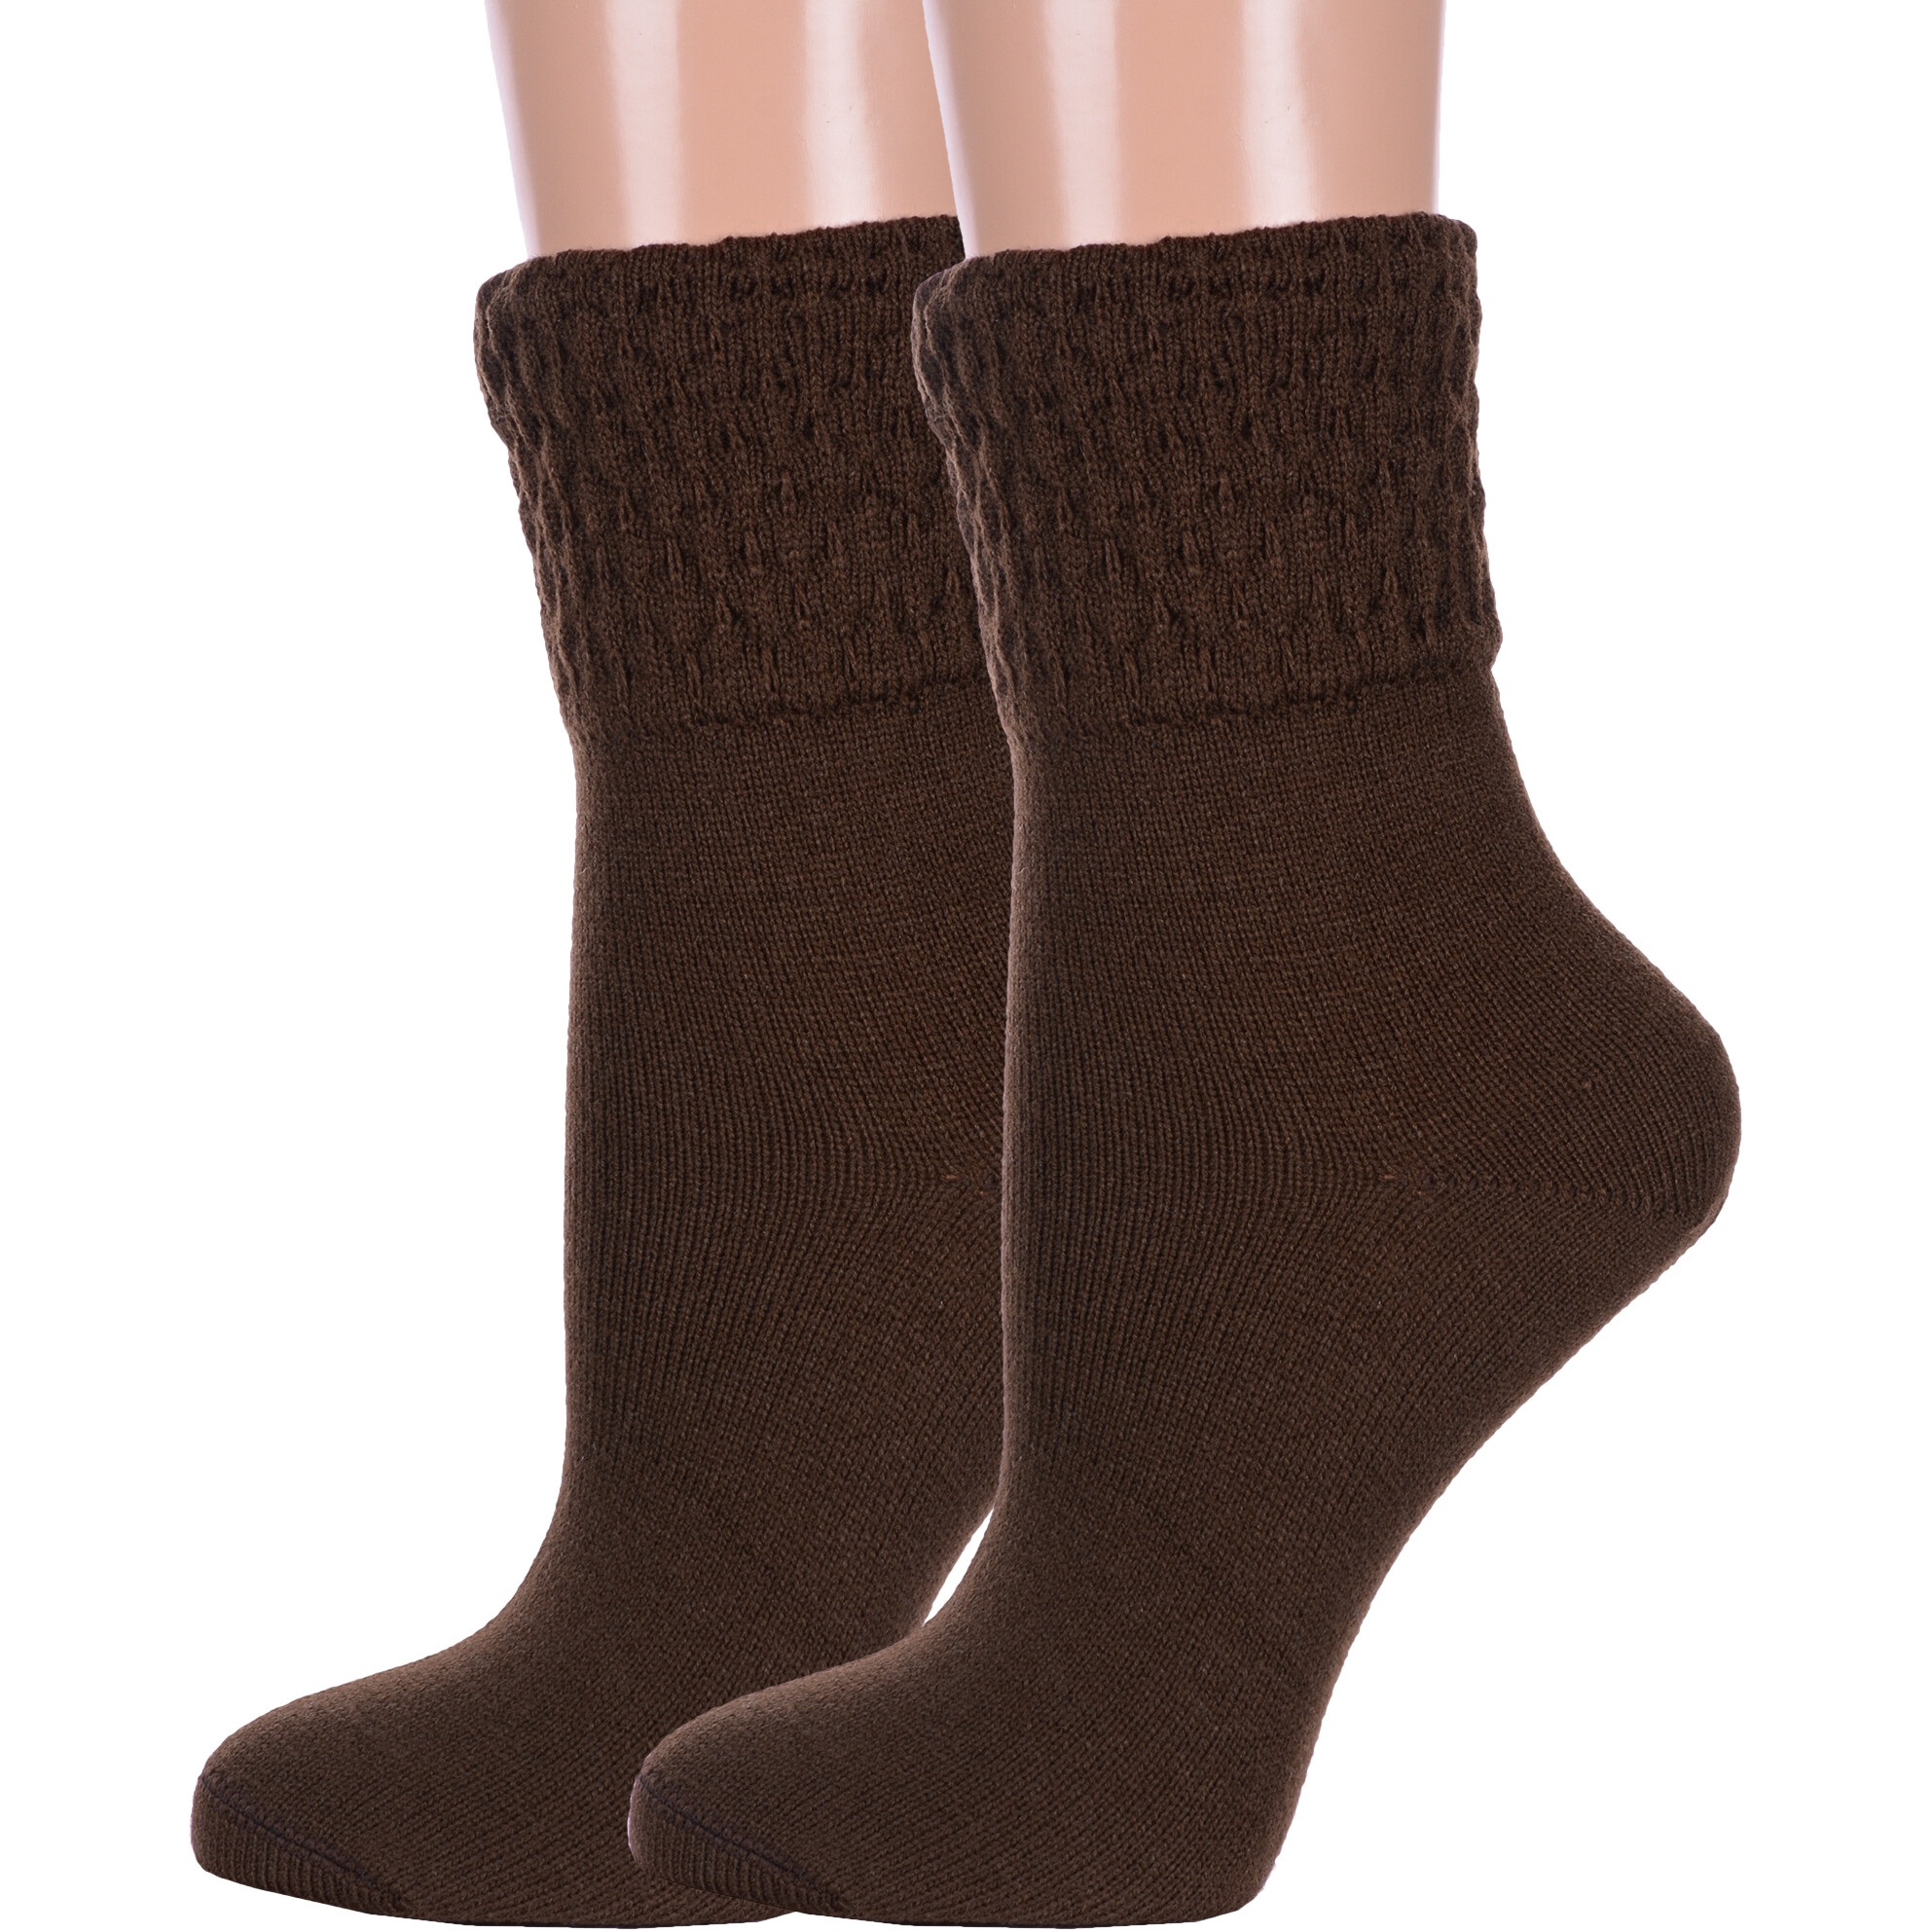 Комплект носков женских LorenzLine 2-В16 коричневых 23, 2 пары